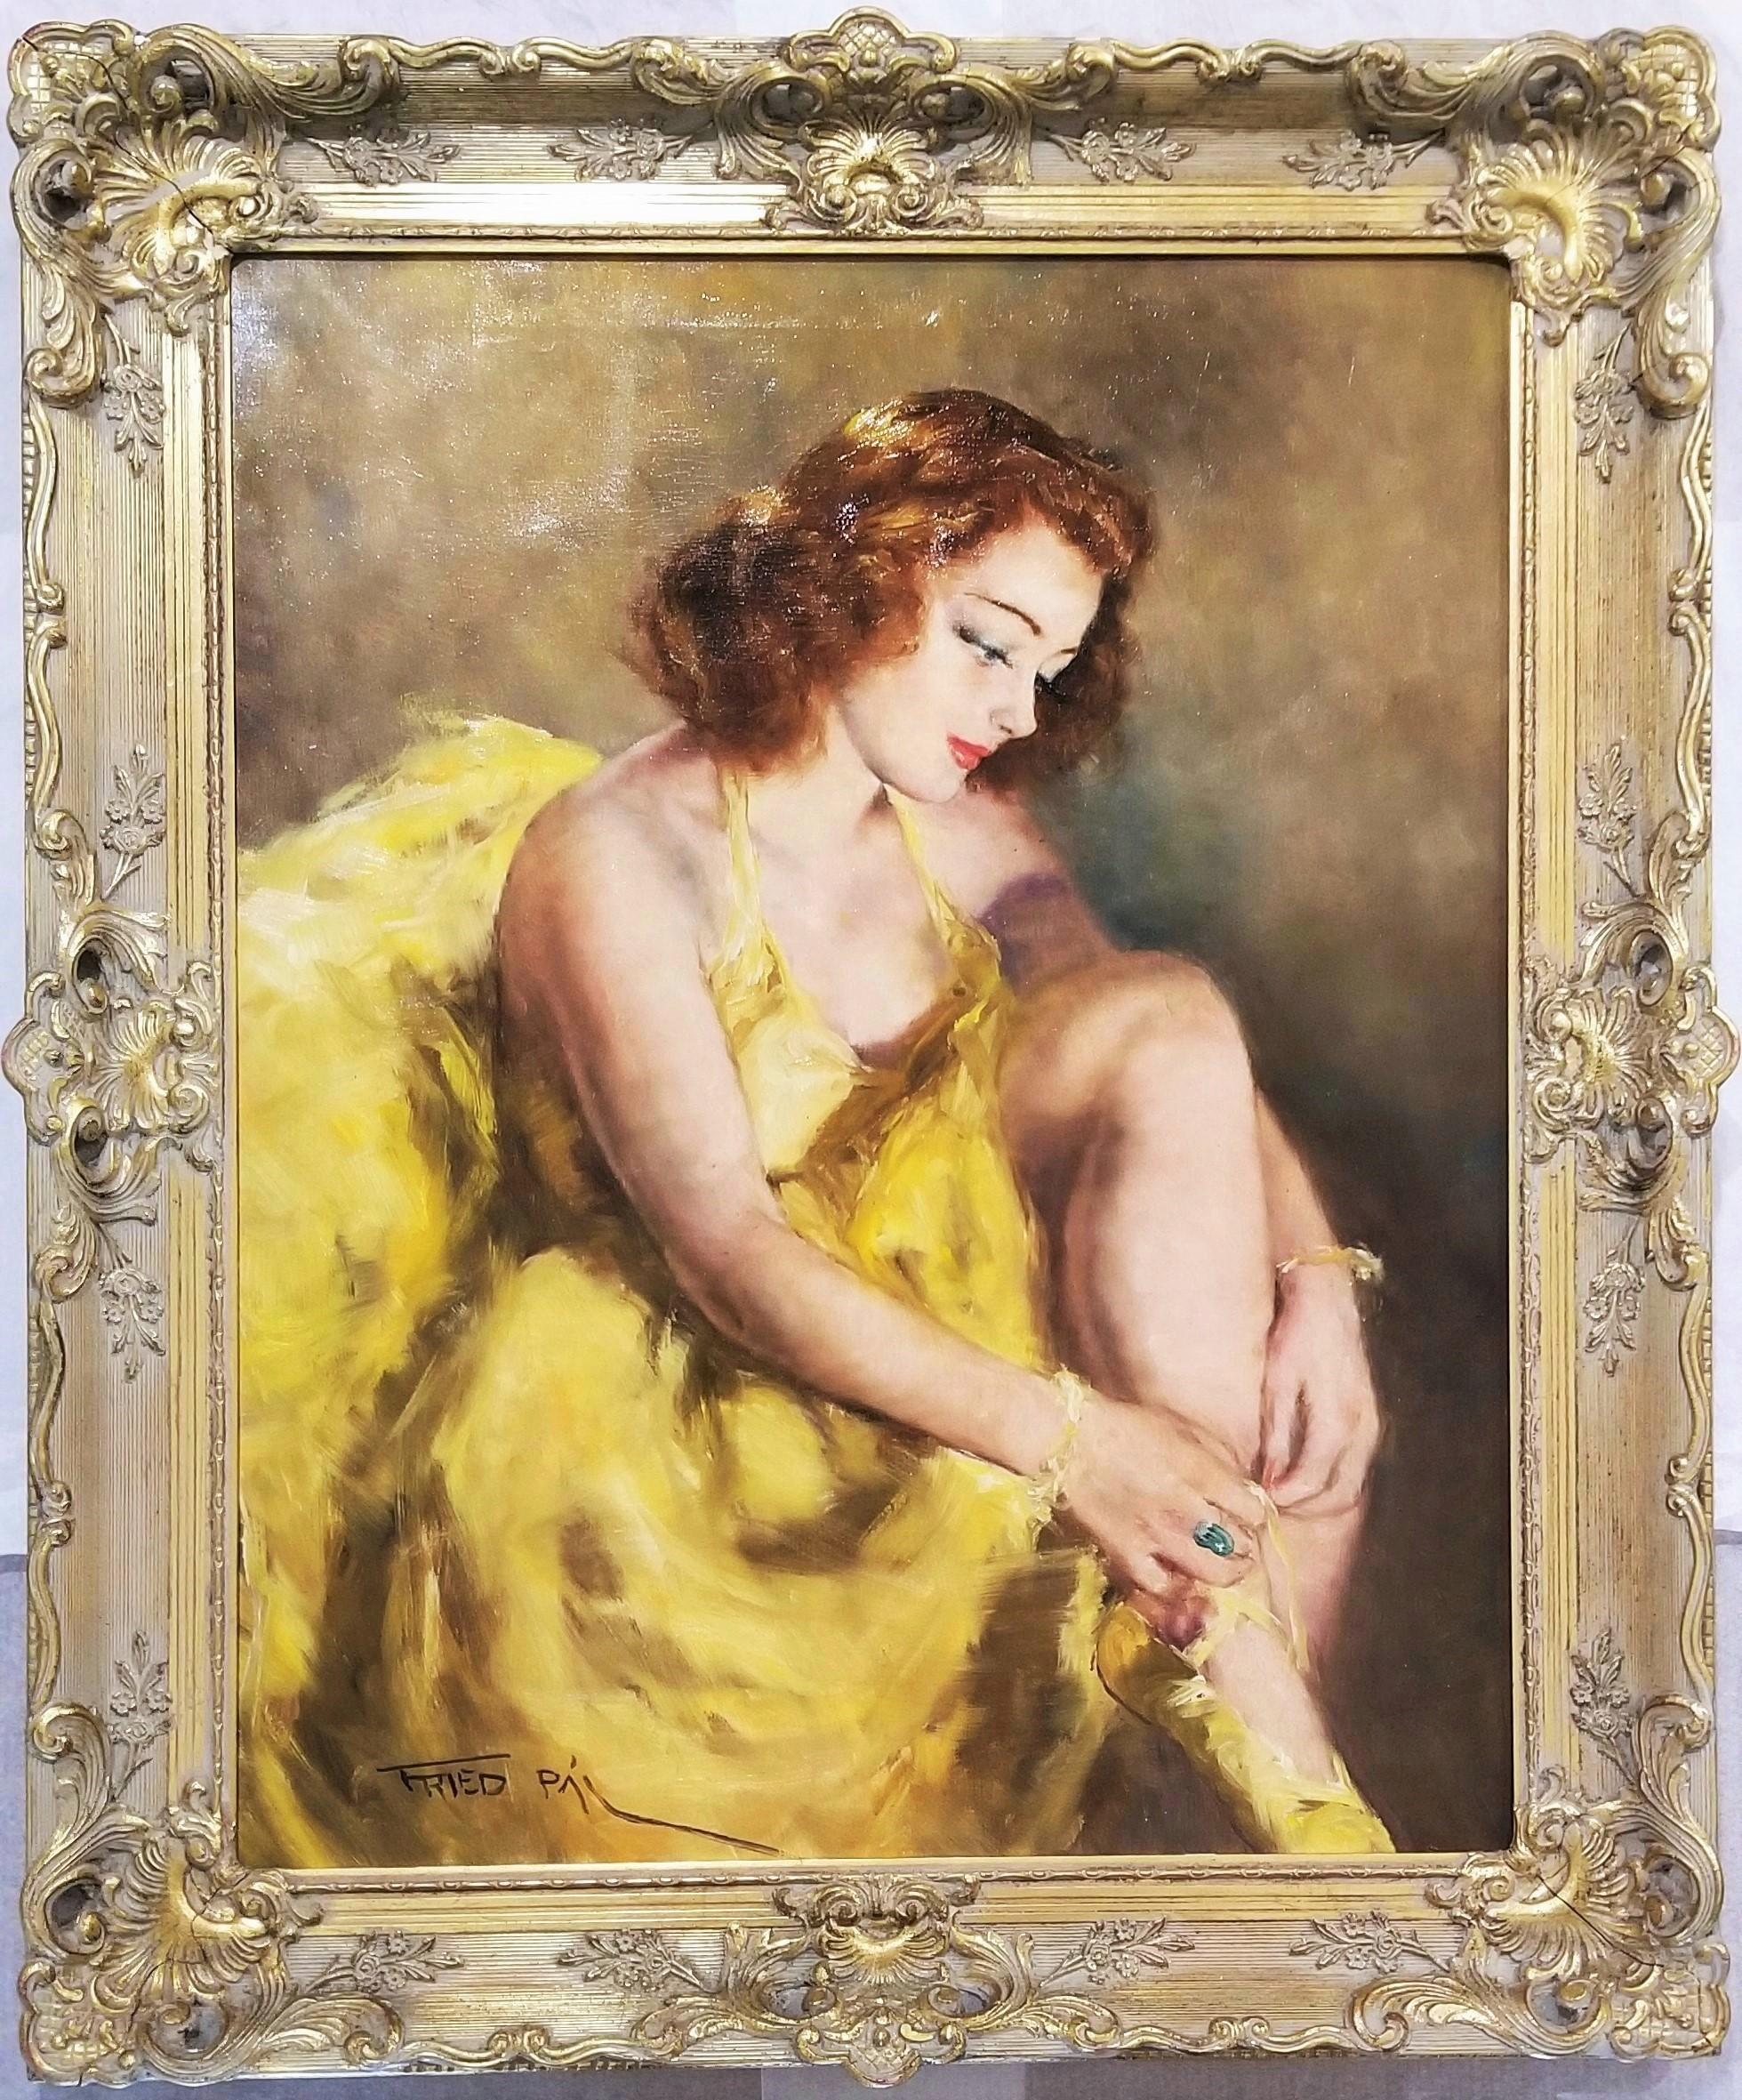 Hortense (Ballerina) /// Impressionismus Degas Französisches Ballett Renoir Figurative Kunst – Painting von Pal Fried